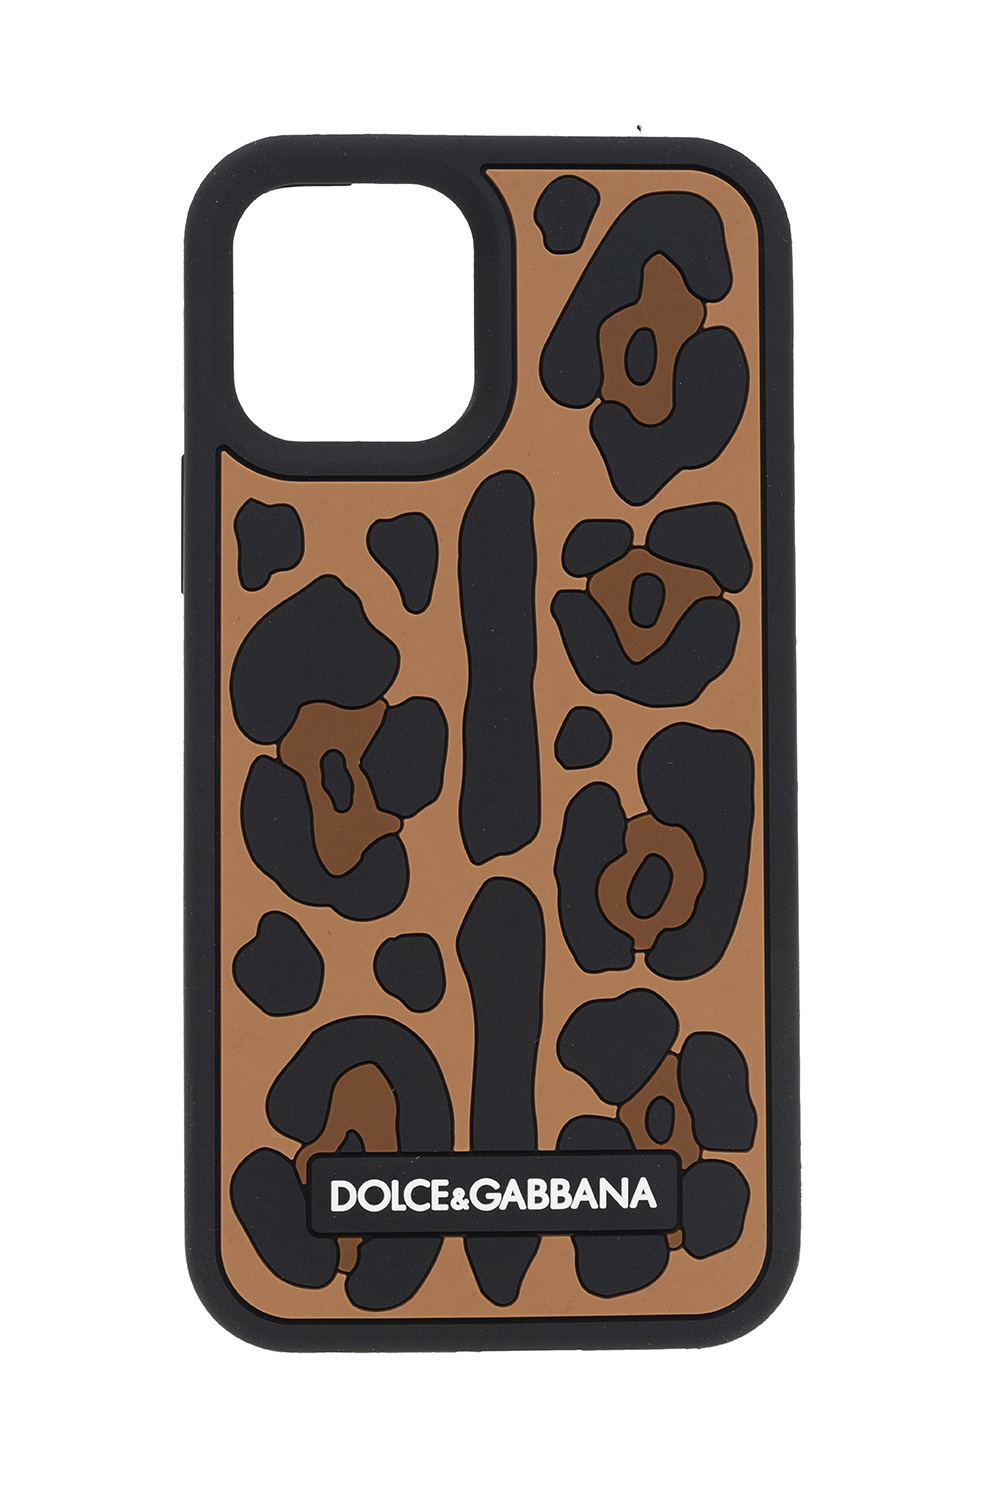 in tegenstelling tot uitzending Van God IetpShops Libya - Mounse Dolce Gabbana DG5039 1551 - iPhone 12 Pro Max case  Dolce & Gabbana